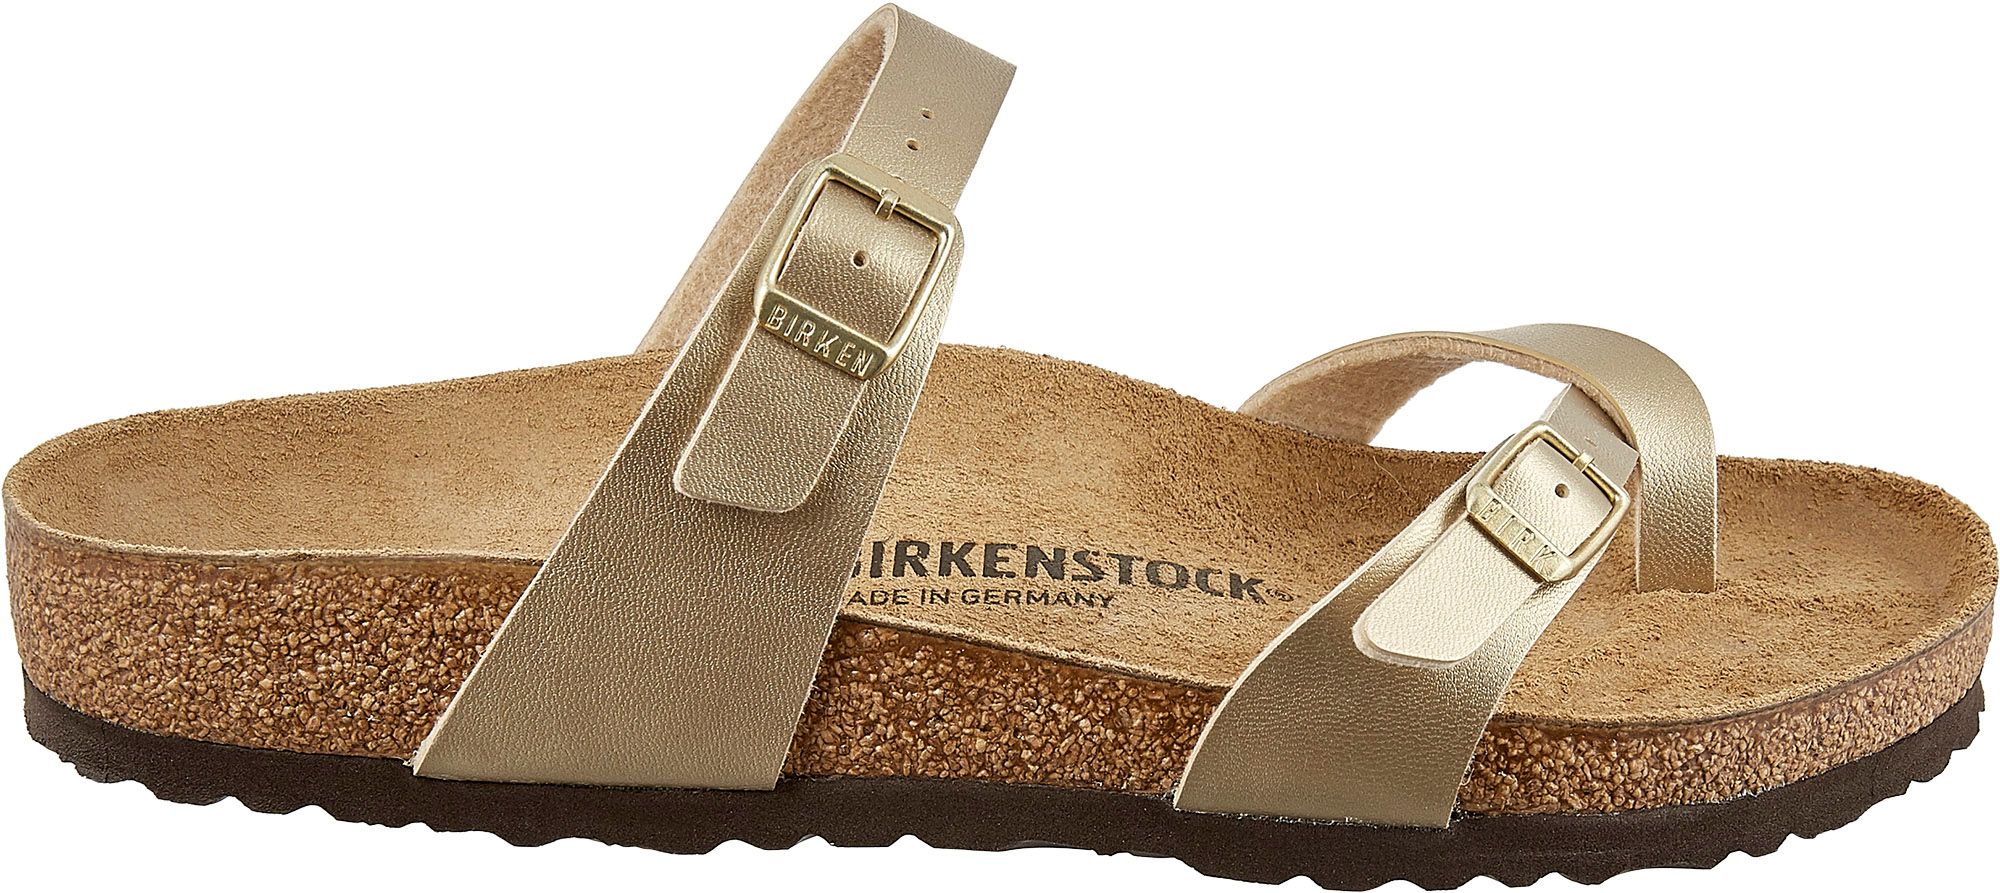 birkenstock shoes mayari